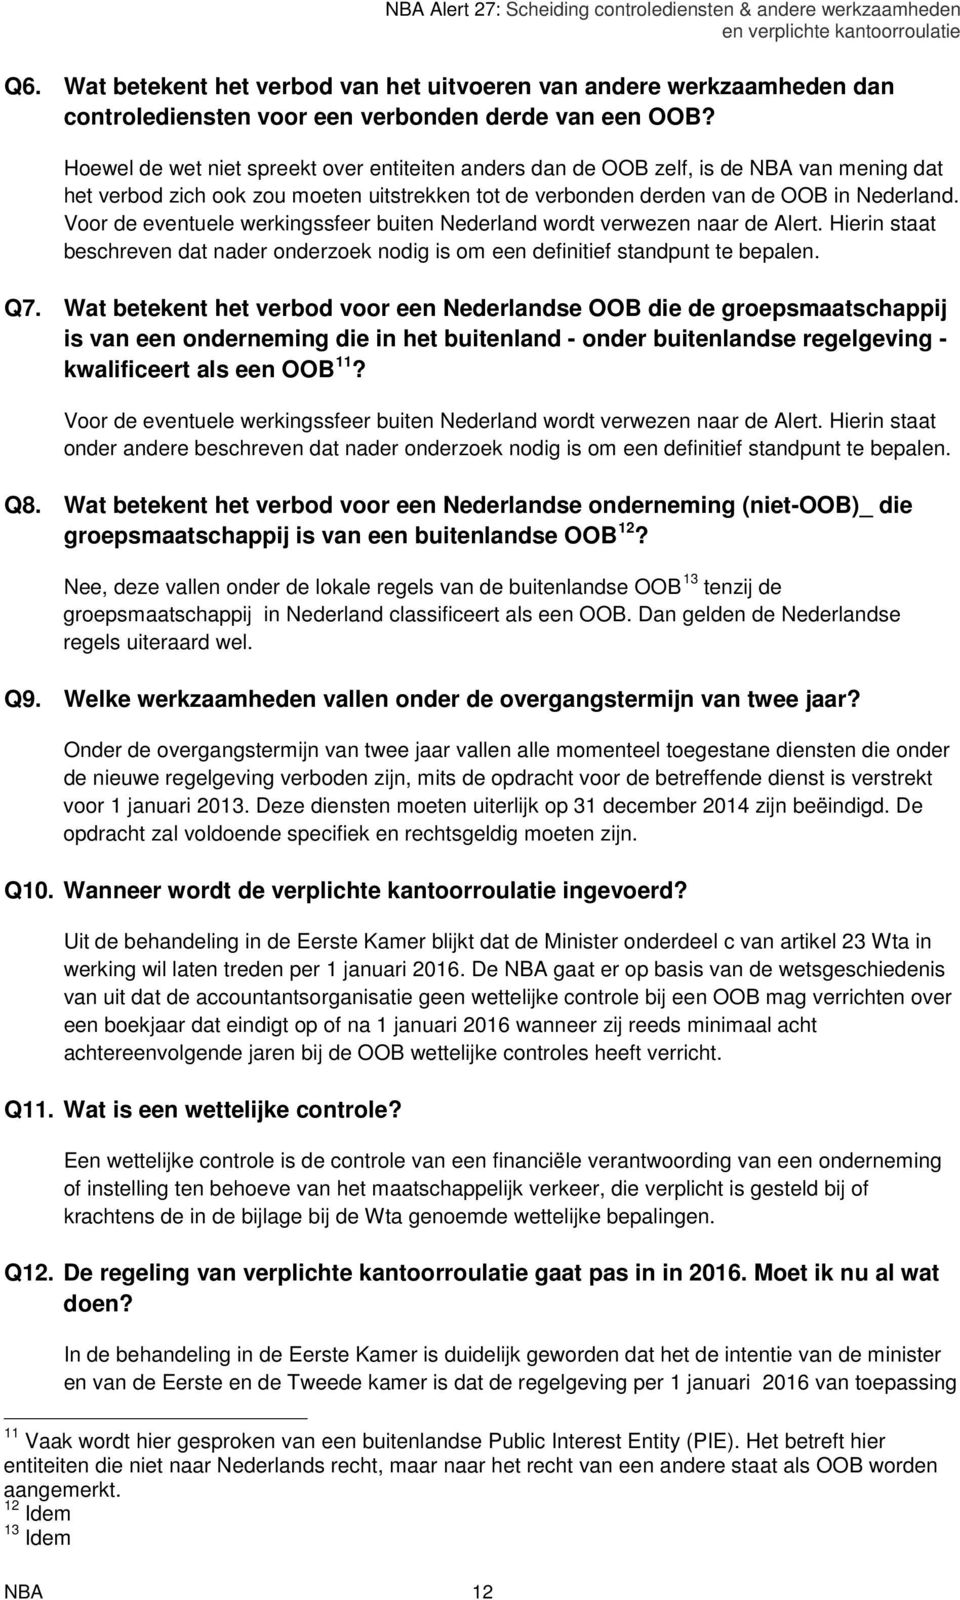 Voor de eventuele werkingssfeer buiten Nederland wordt verwezen naar de Alert. Hierin staat beschreven dat nader onderzoek nodig is om een definitief standpunt te bepalen. Q7.